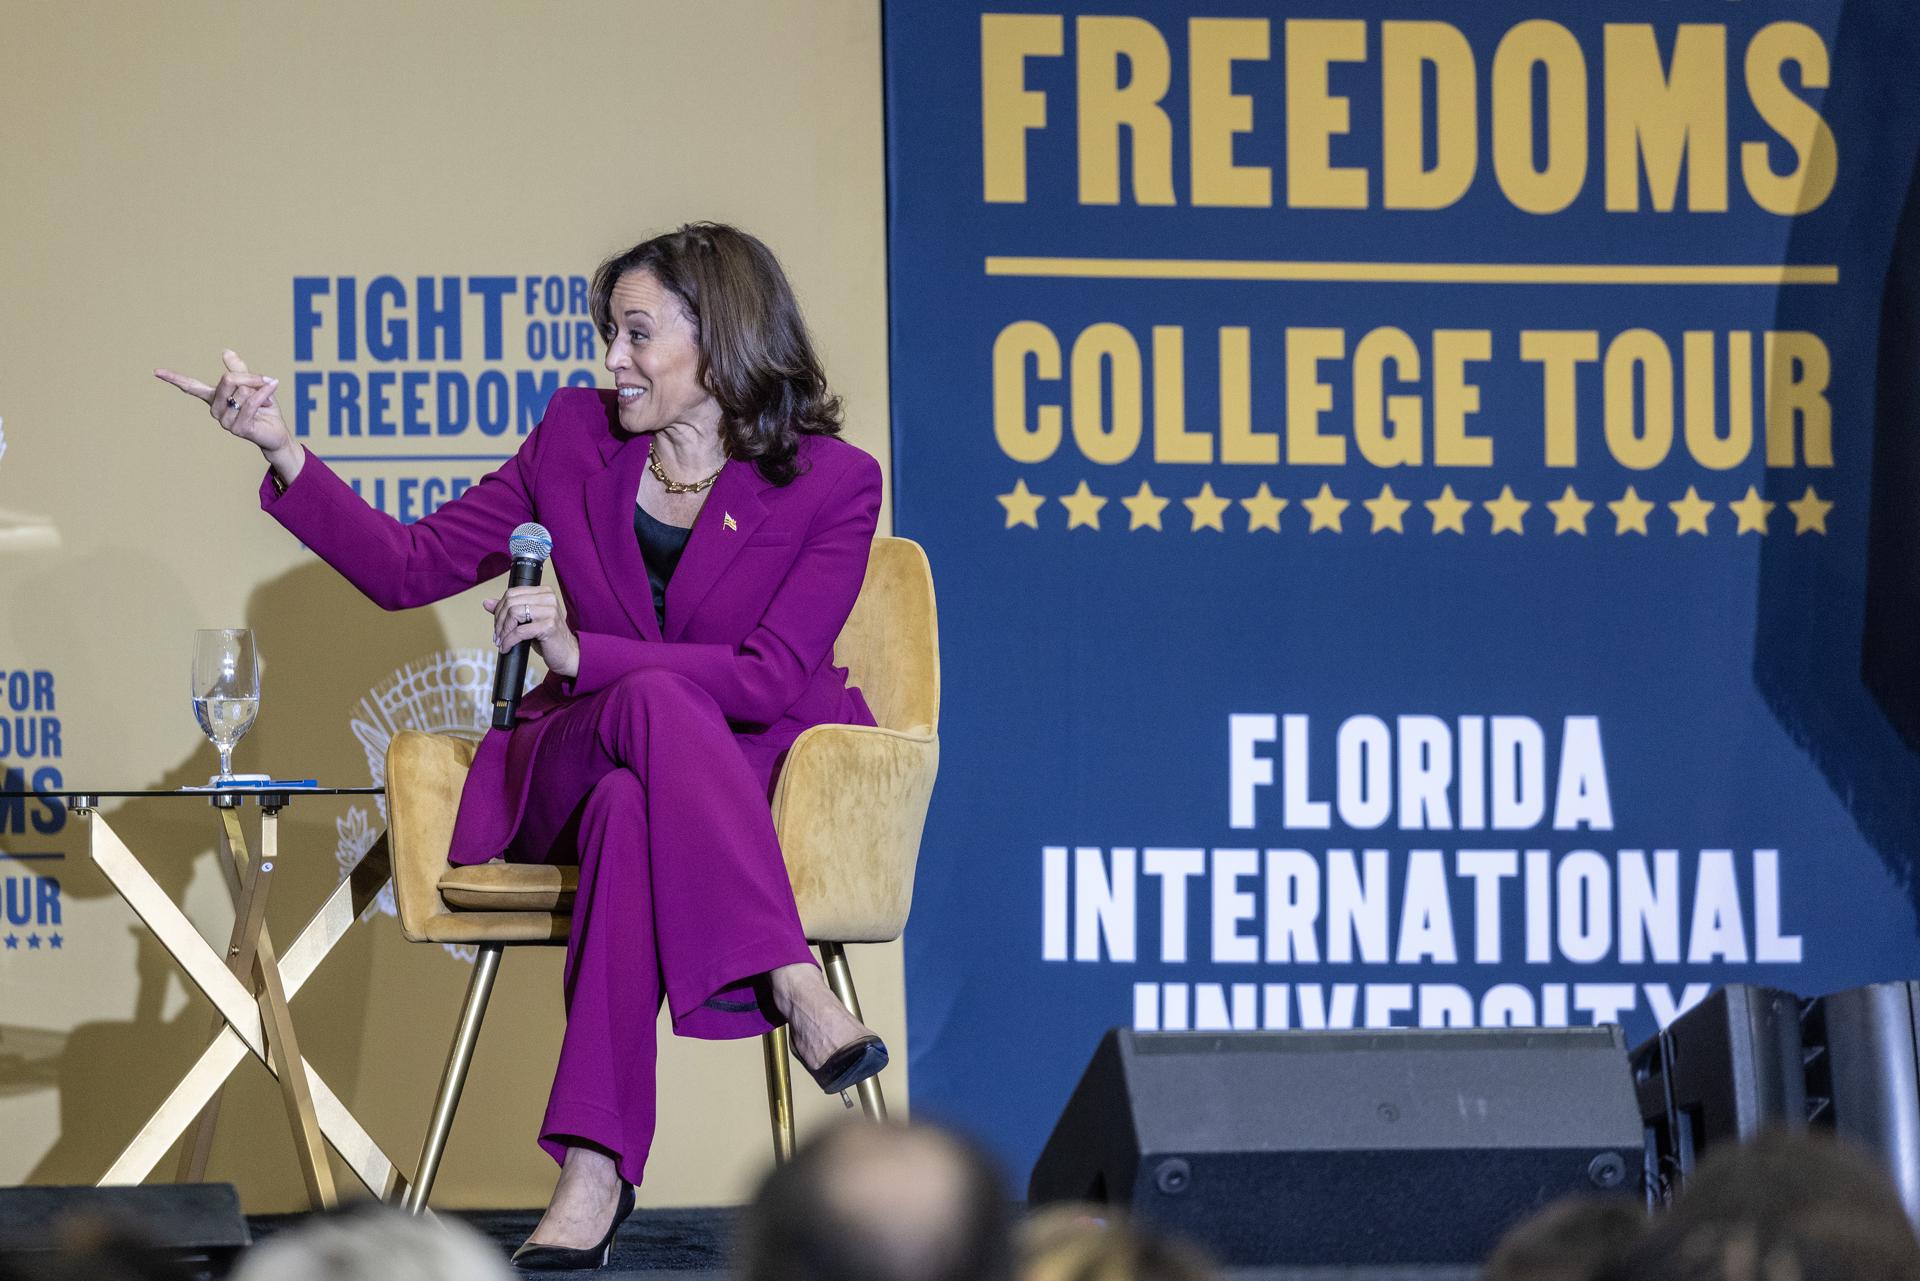 La vicepresidenta de EE.UU., Kamala Harris, habla, este 28 de septiembre de 2023, durante una visita al campus de la Universidad Internacional de Florida (FIU), en Miami, parte de su gira universitaria "Fight for Our Freedoms". EFE/Cristóbal Herrera